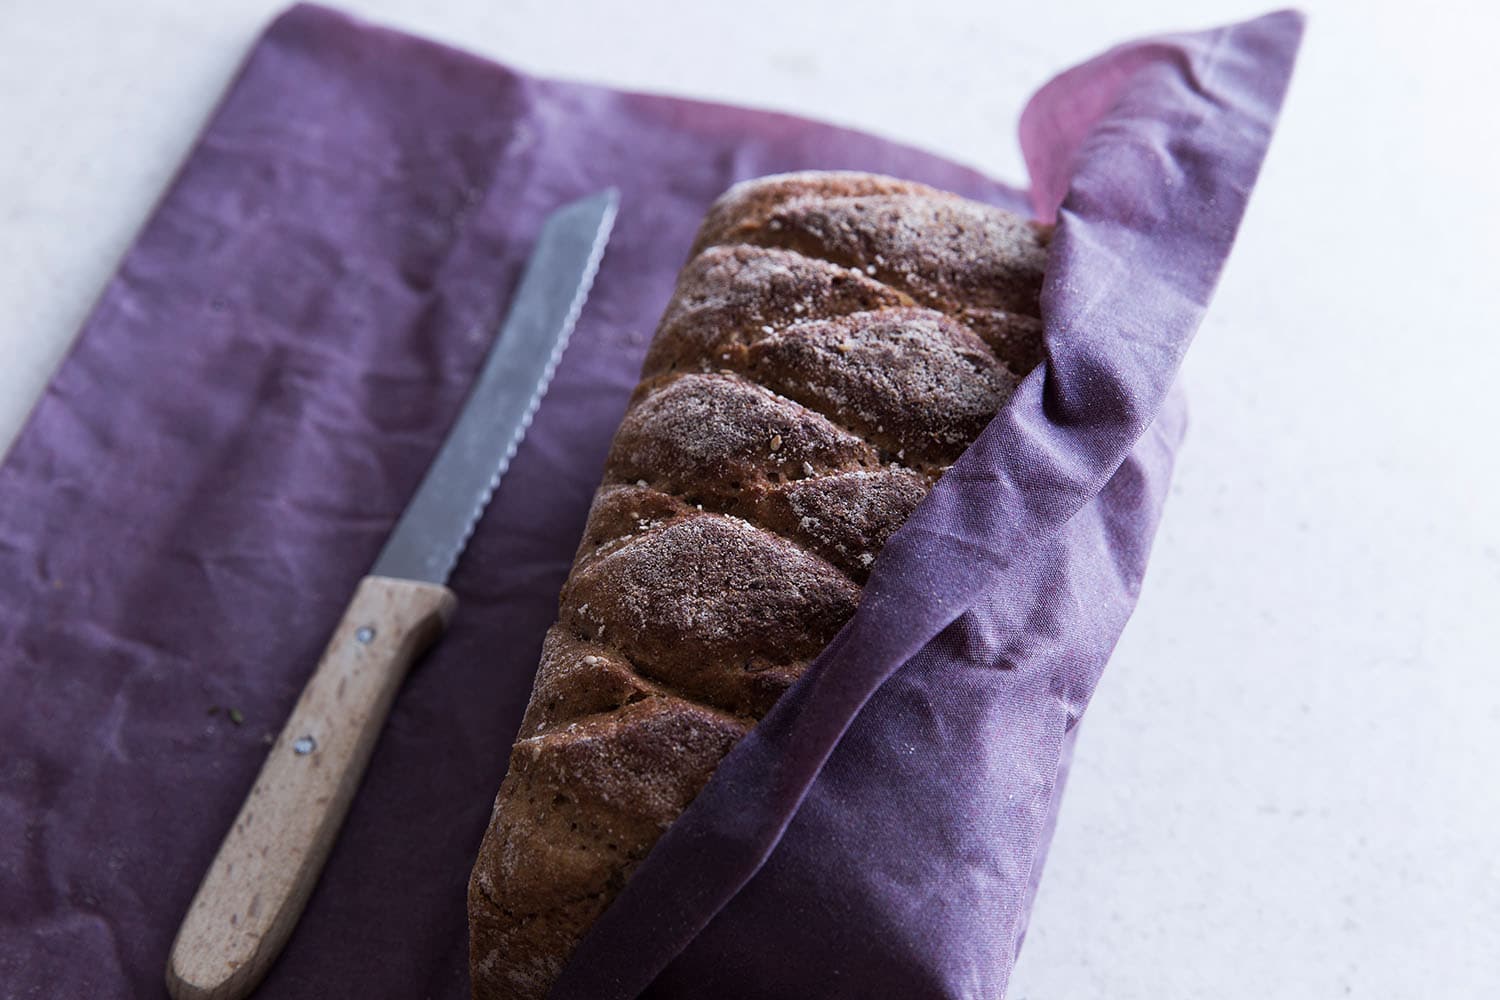 Brot eingepackt in einem Bienenwachstuch in der Farbe Lila, daneben liegt ein Messer.